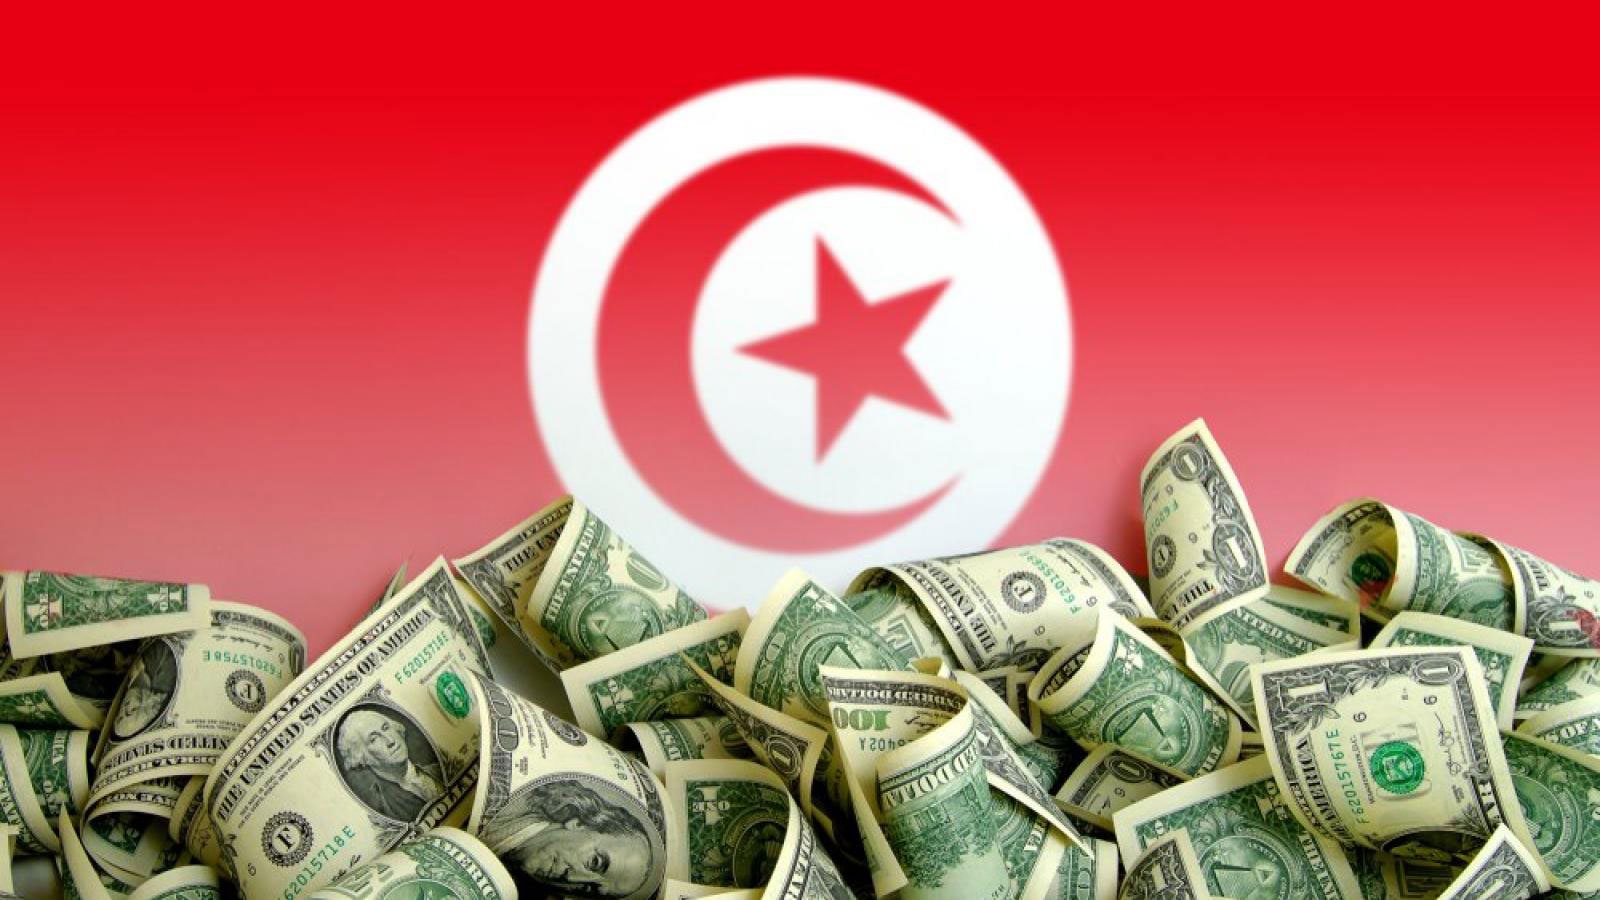 جريدة الصباح نيوز - ديونها تجاوزت 100 مليار دينار: تونس الاكثر مديونية بين دول الجوار متفوقة على المغرب والجزائر!